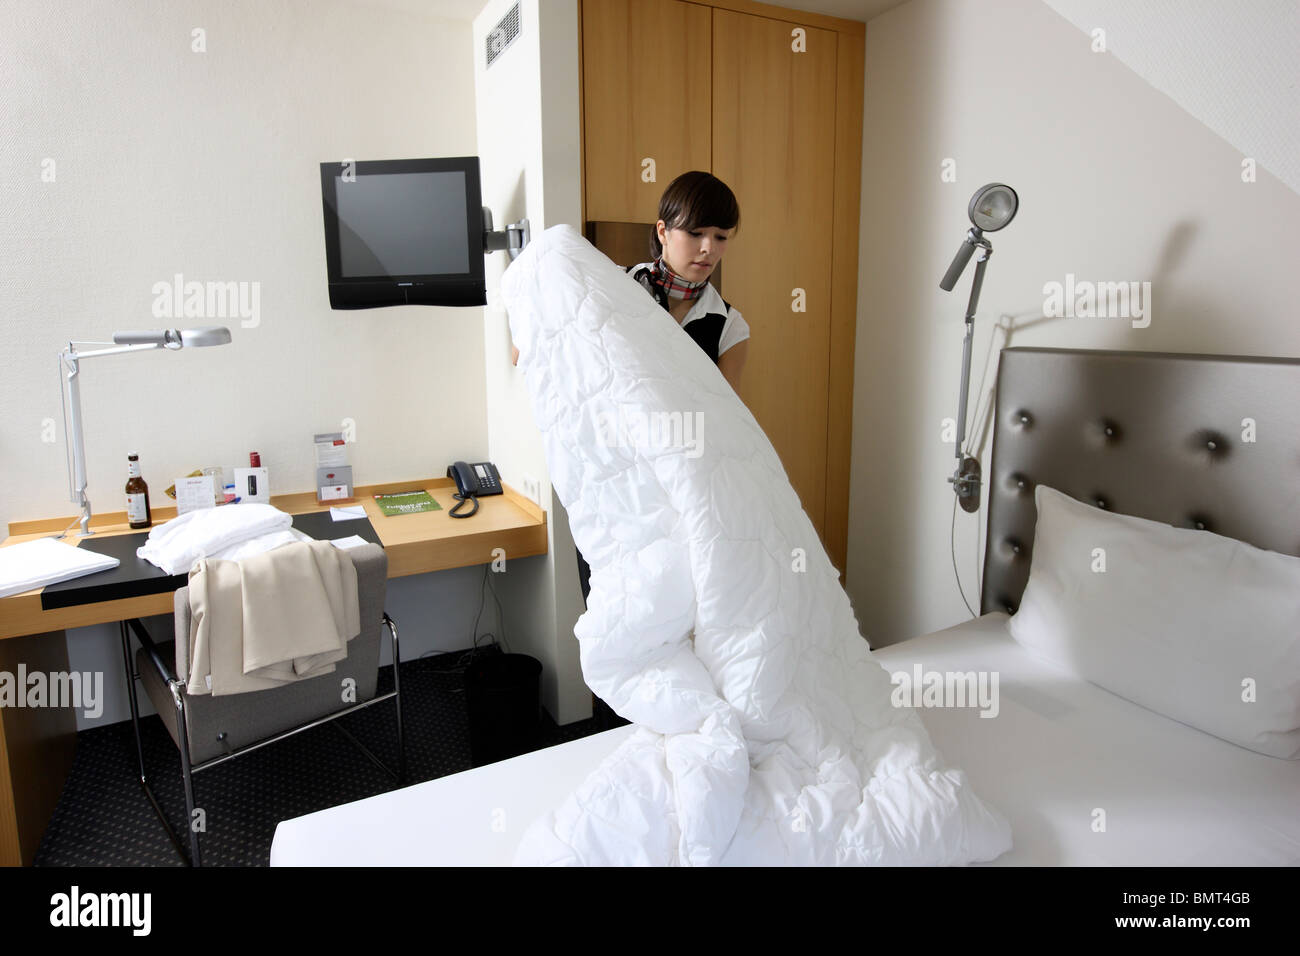 Hotel, servicio de habitaciones, limpieza y mantenimiento de la casa al trabajo en una habitación de hotel. hacer las camas de stock - Alamy